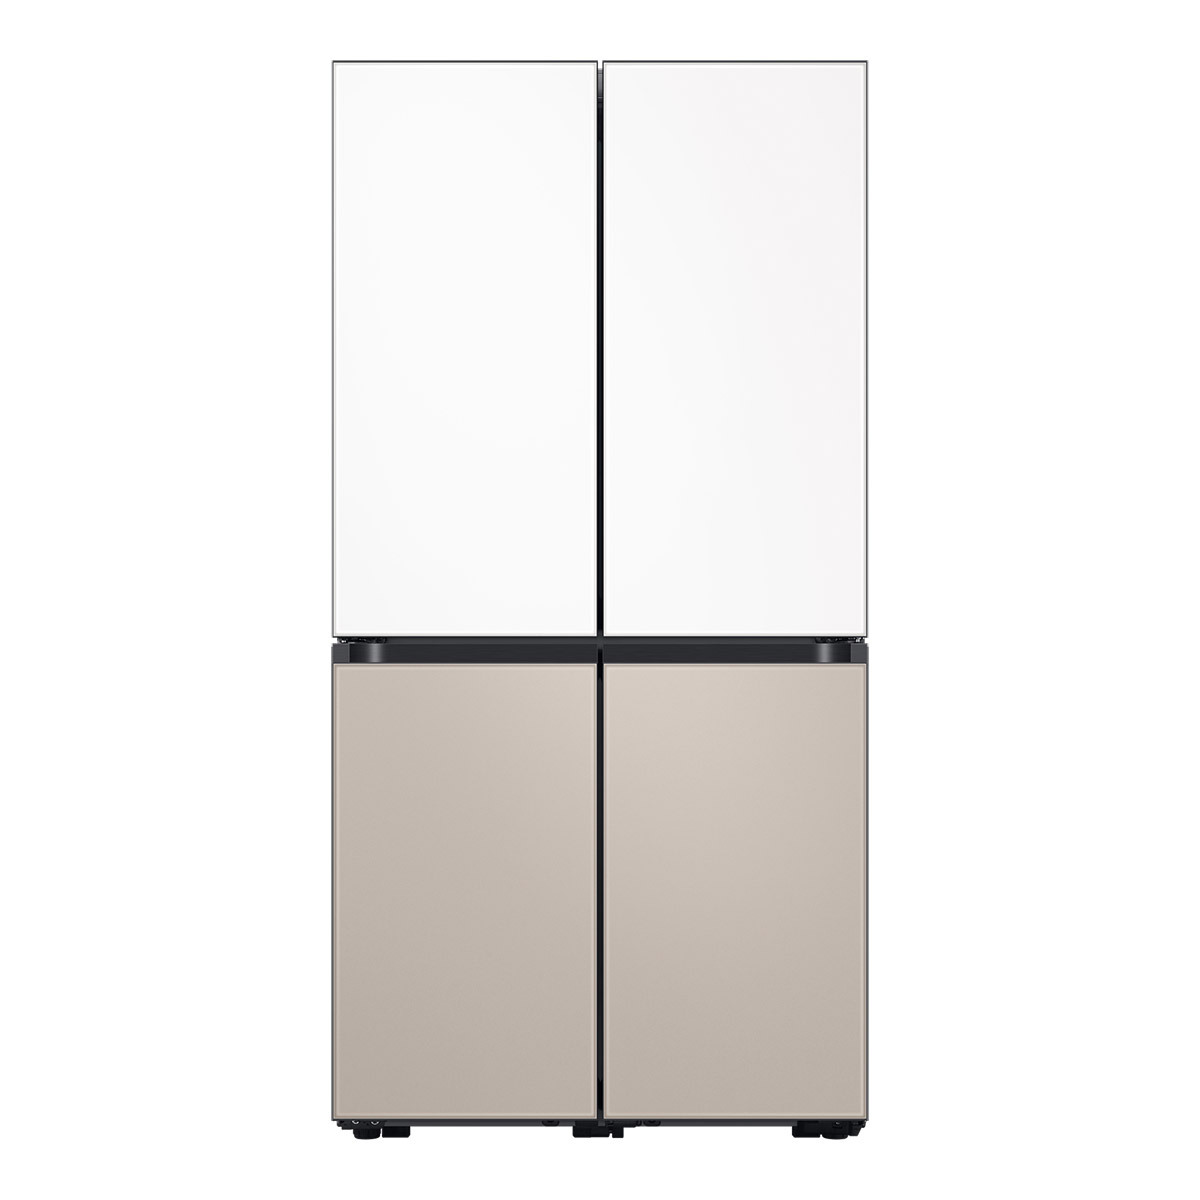 삼성 비스포크 냉장고 848L, 새틴화이트베이지